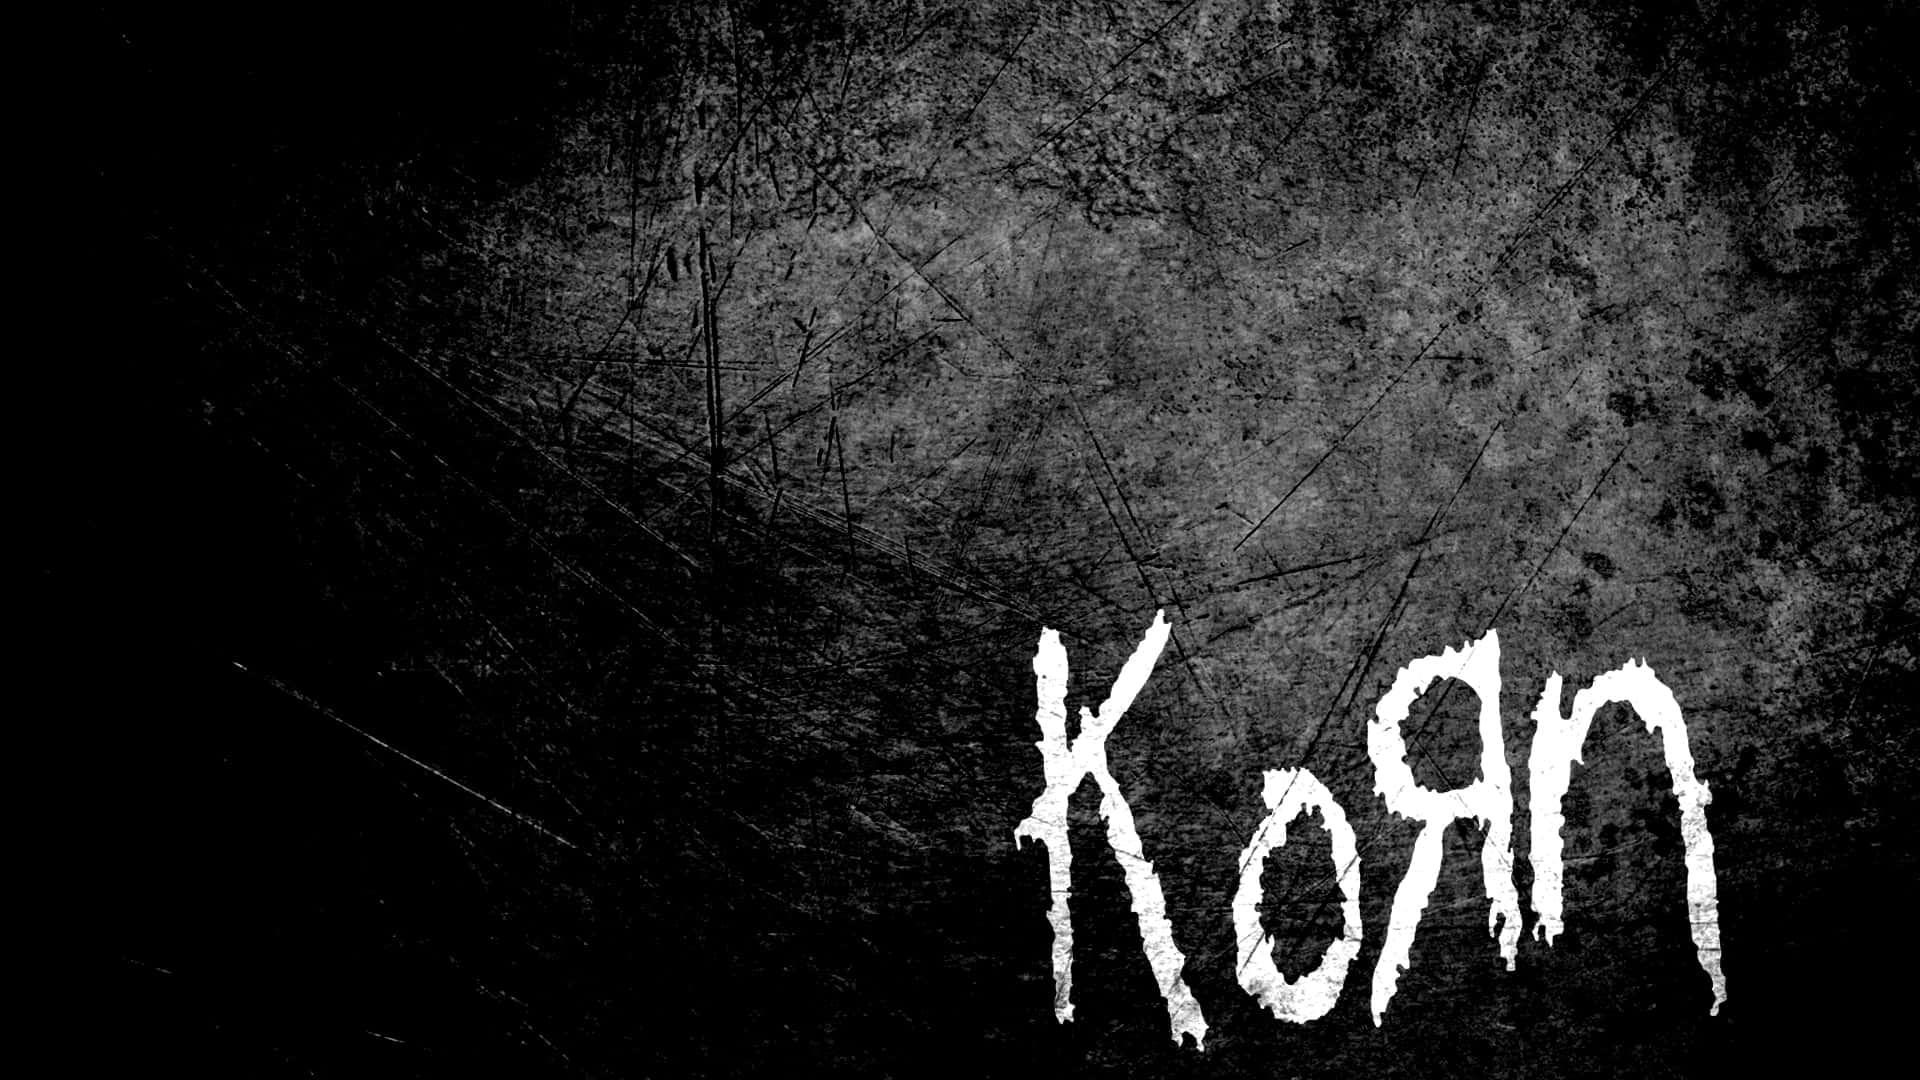 Kornhintergrundbilder - Korn-hintergrundbilder Wallpaper